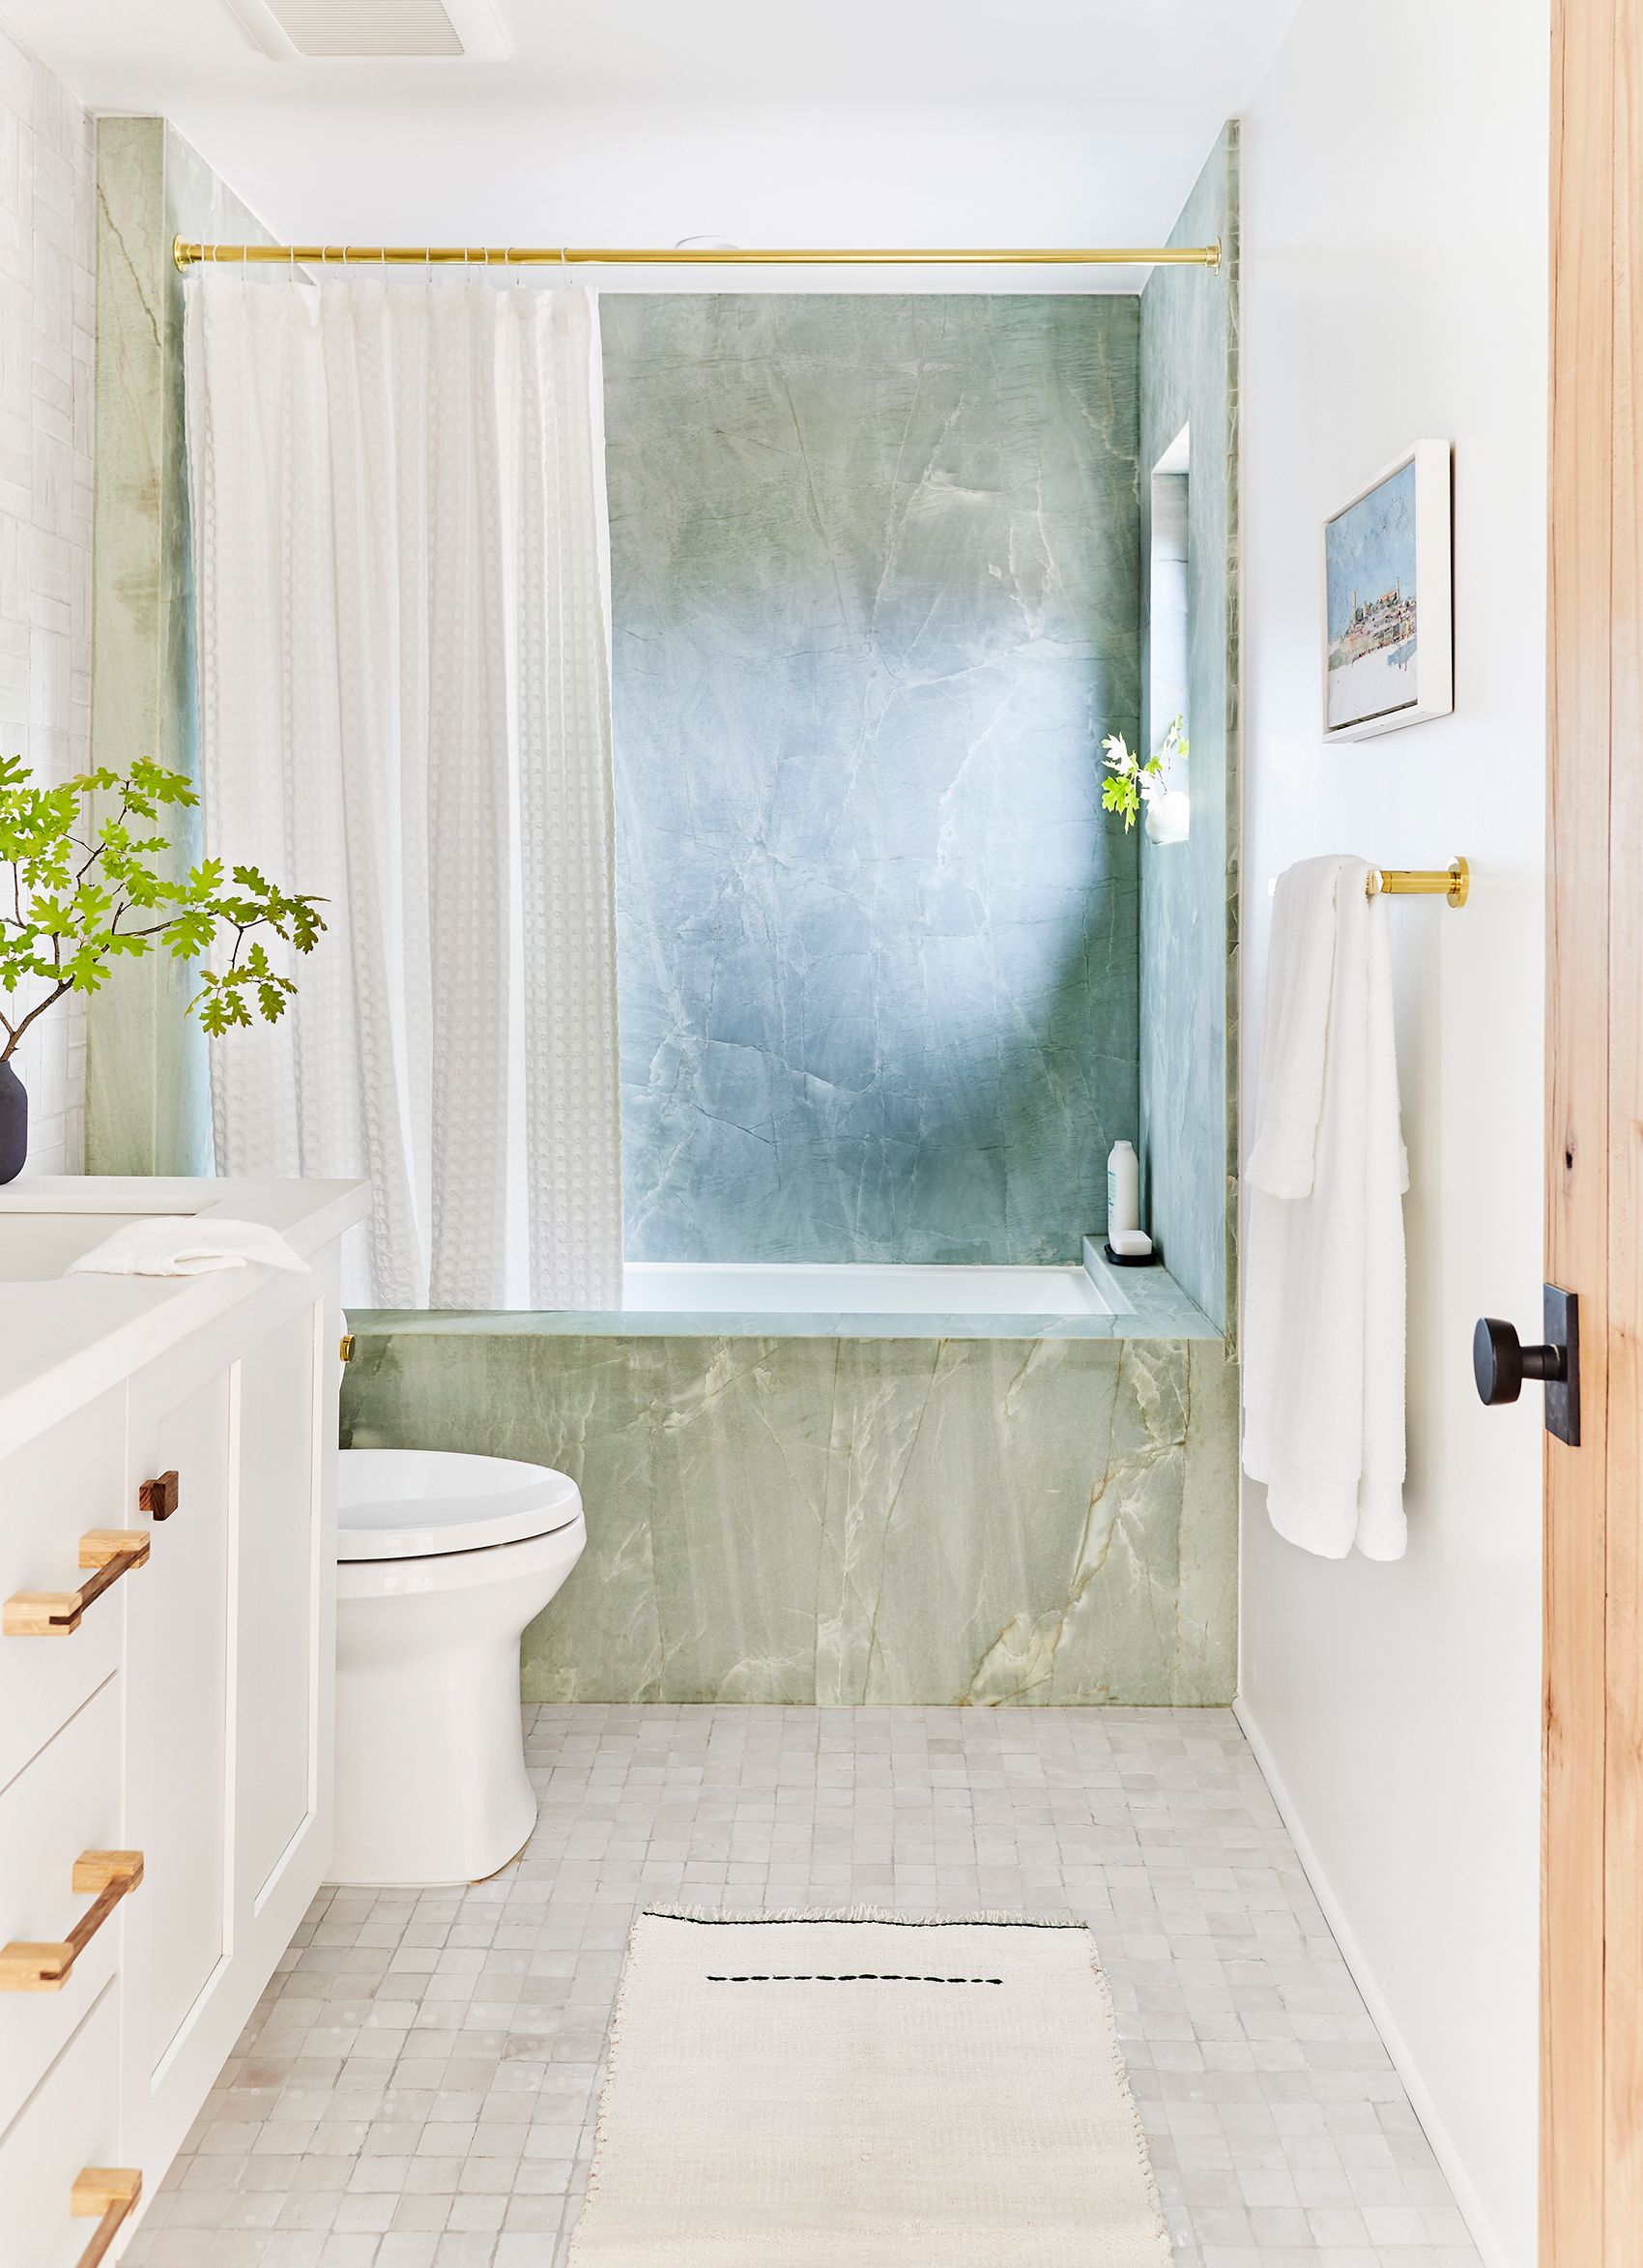 48 Bathroom Tile Ideas Bath, Ceramic Tile Ideas For Small Bathrooms